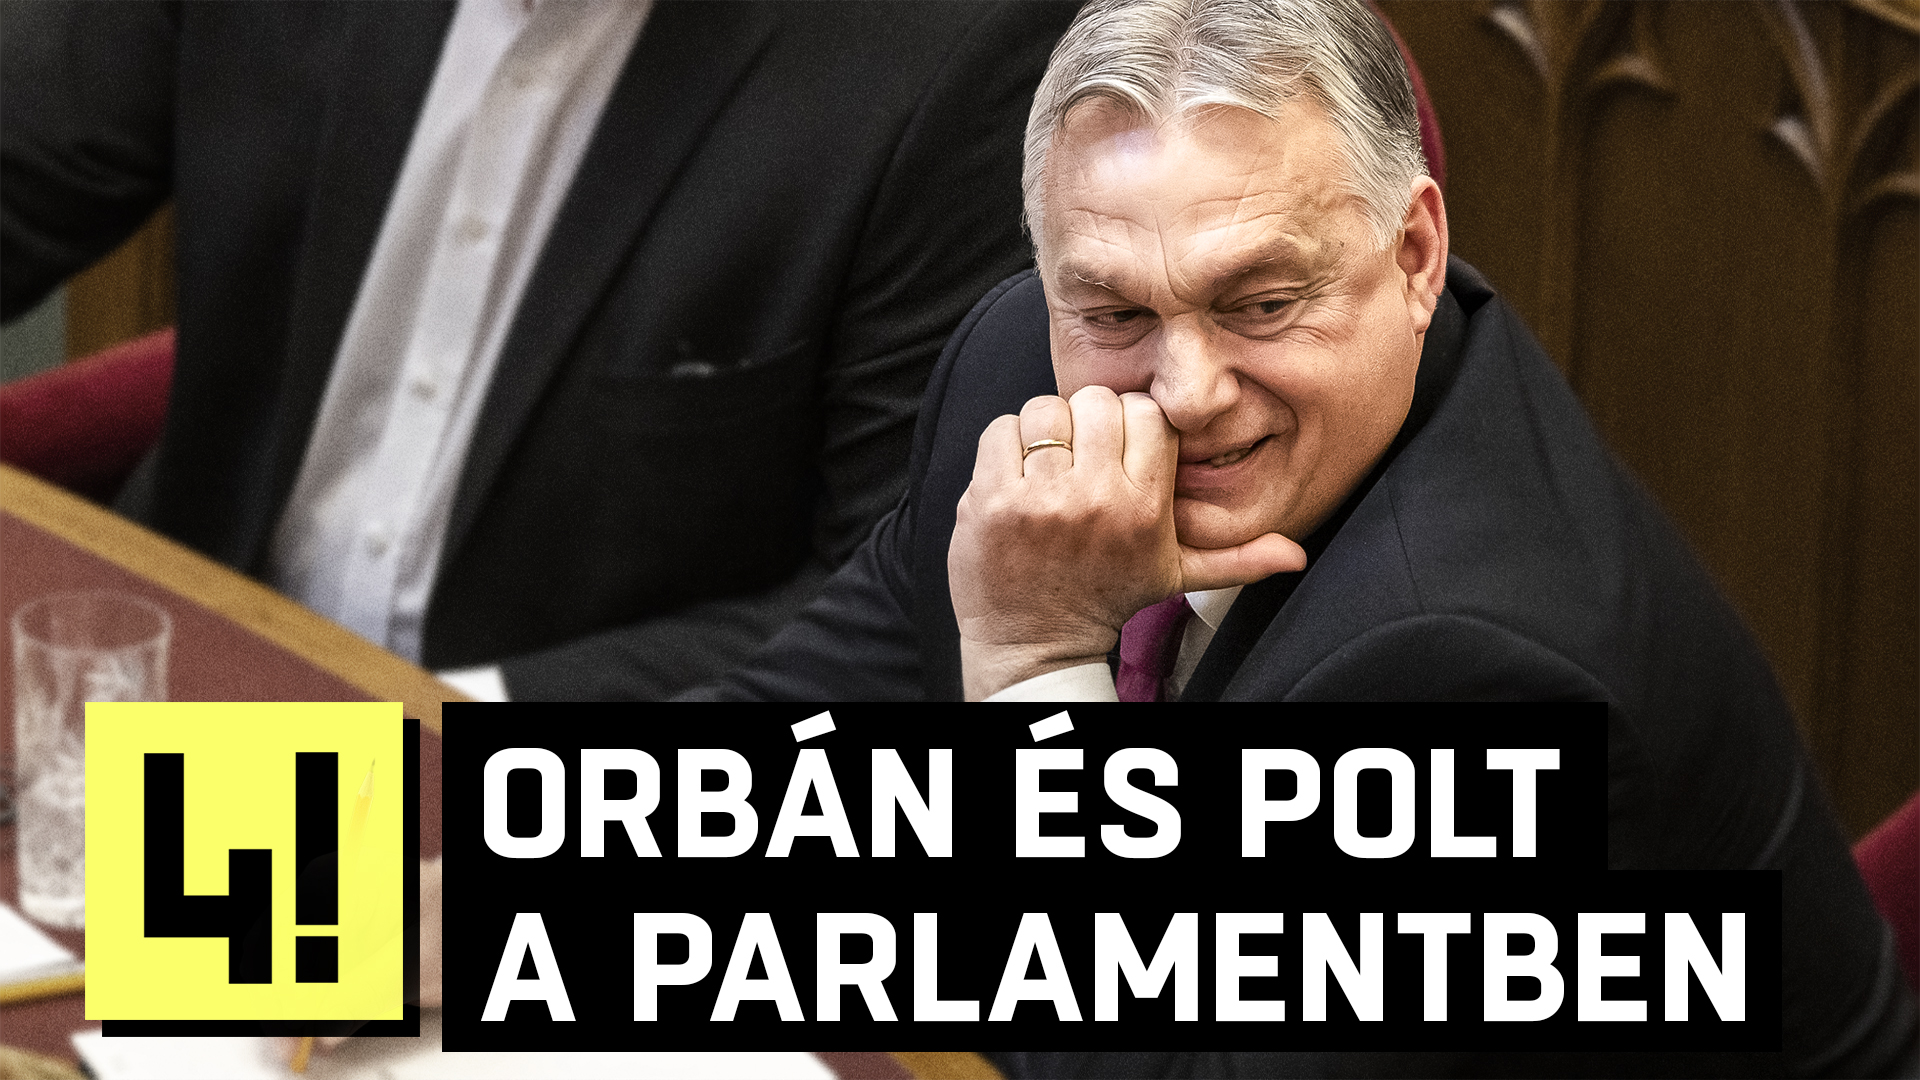 „Hogy mondhatja ezt?” - feszült parlamenti ülésen válaszolt Orbán és Polt Péter